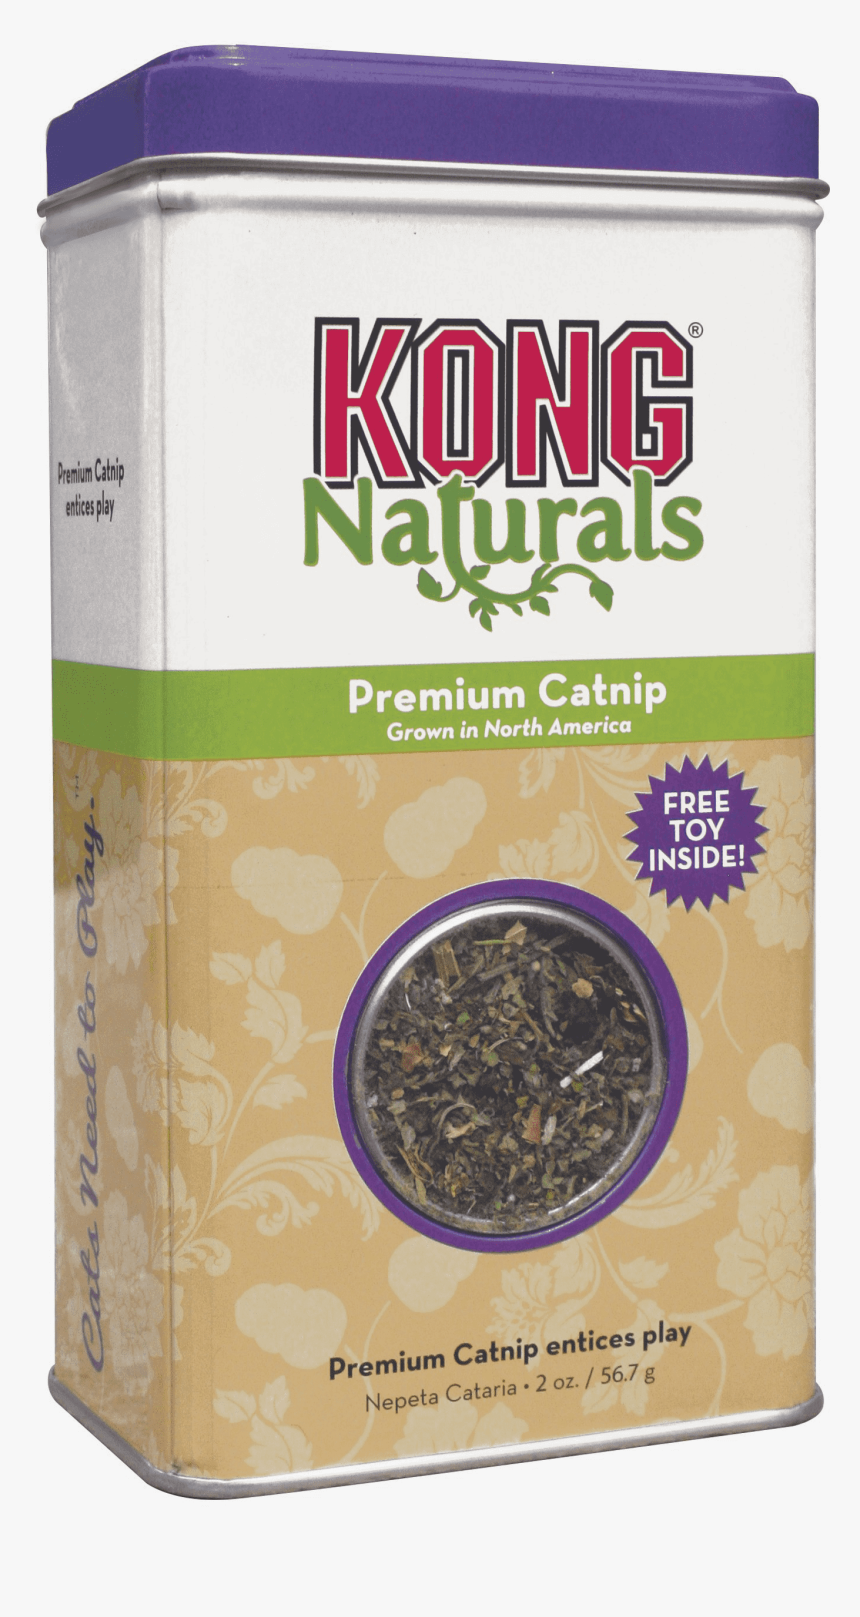 Kong Naturals Premium Catnip 1 Oz, HD Png Download, Free Download